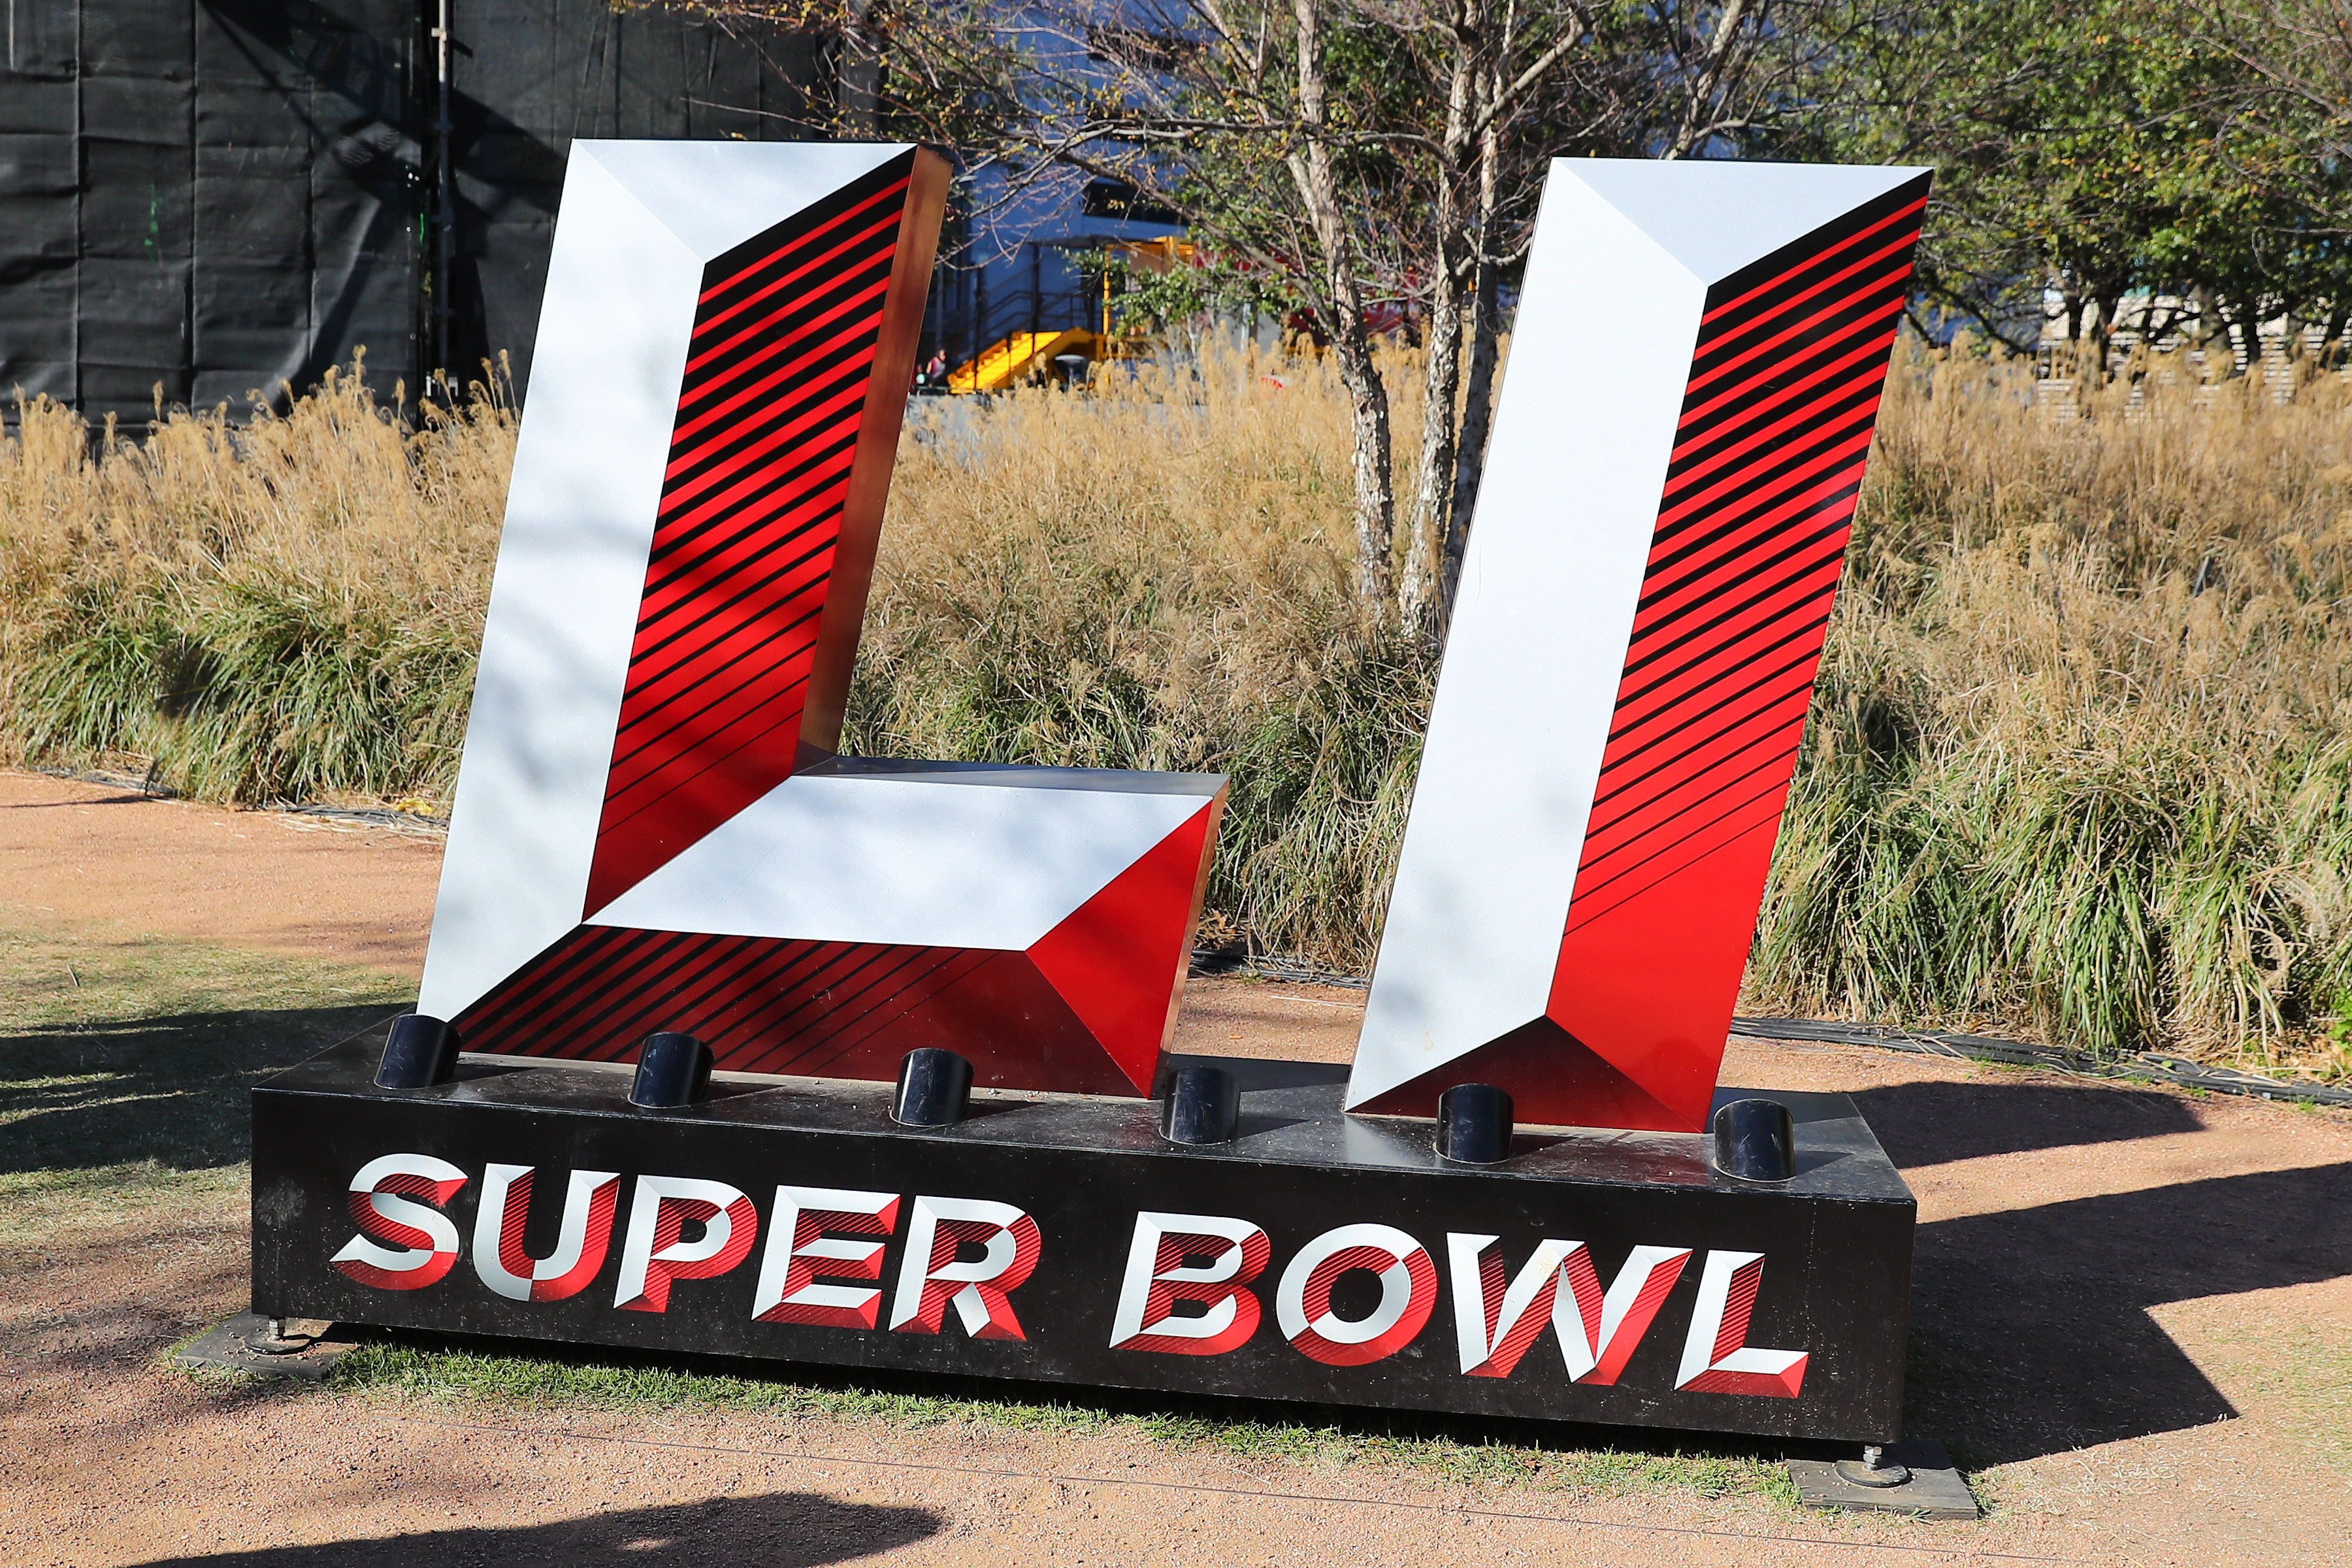 The Super Bowl 51 logo in Houston, Texas